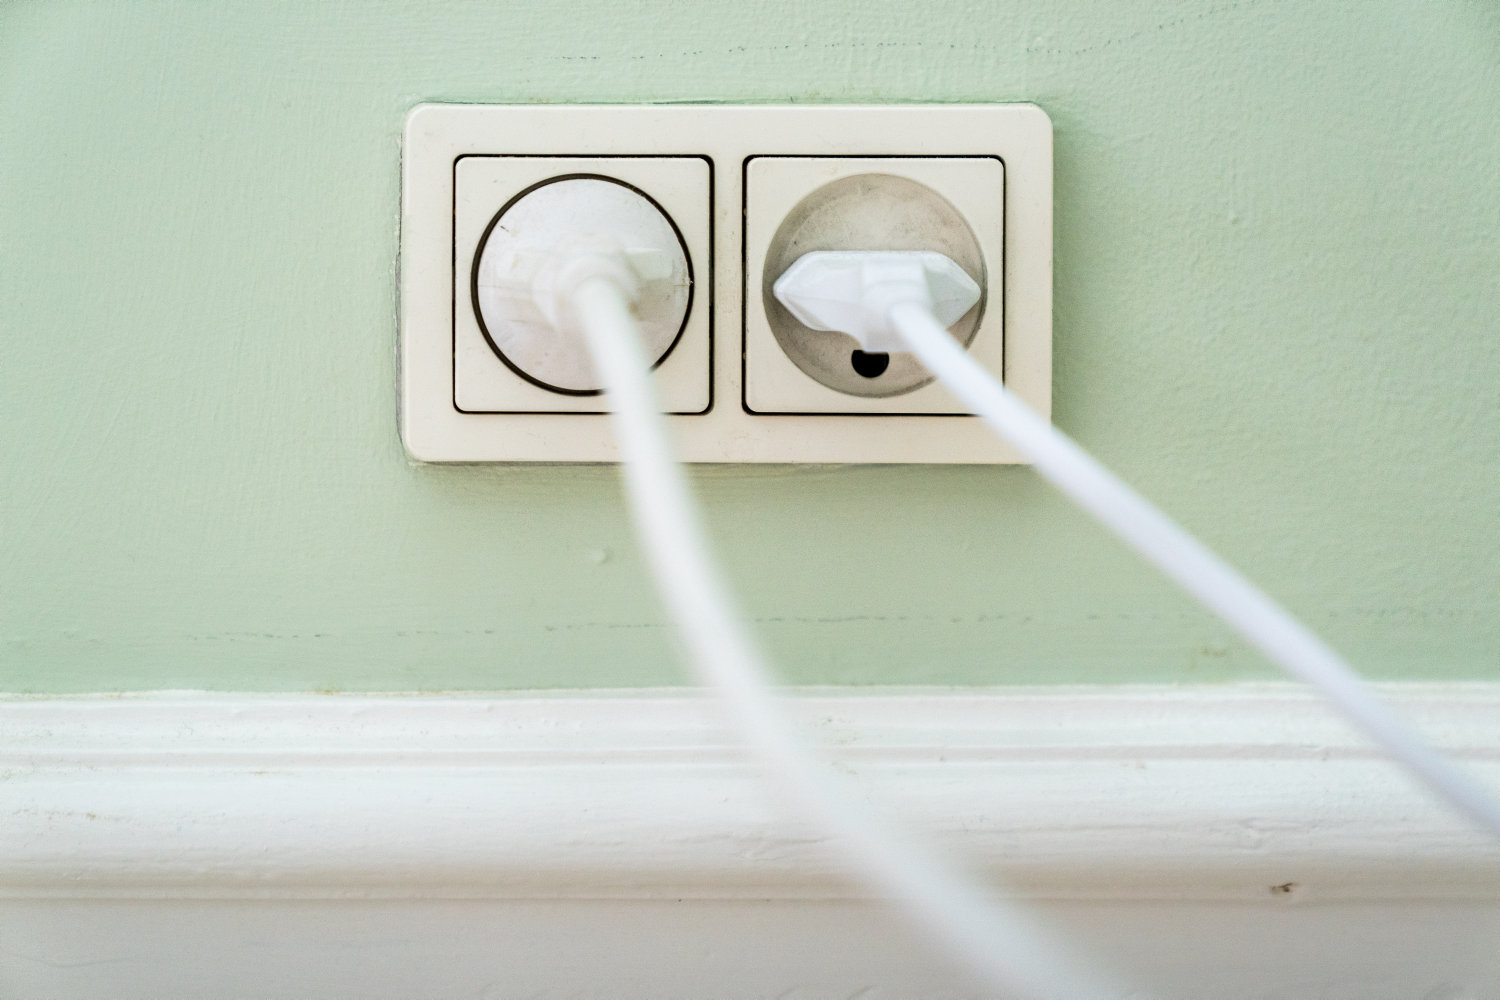 undgå farlige vaner med hjemmets ledninger